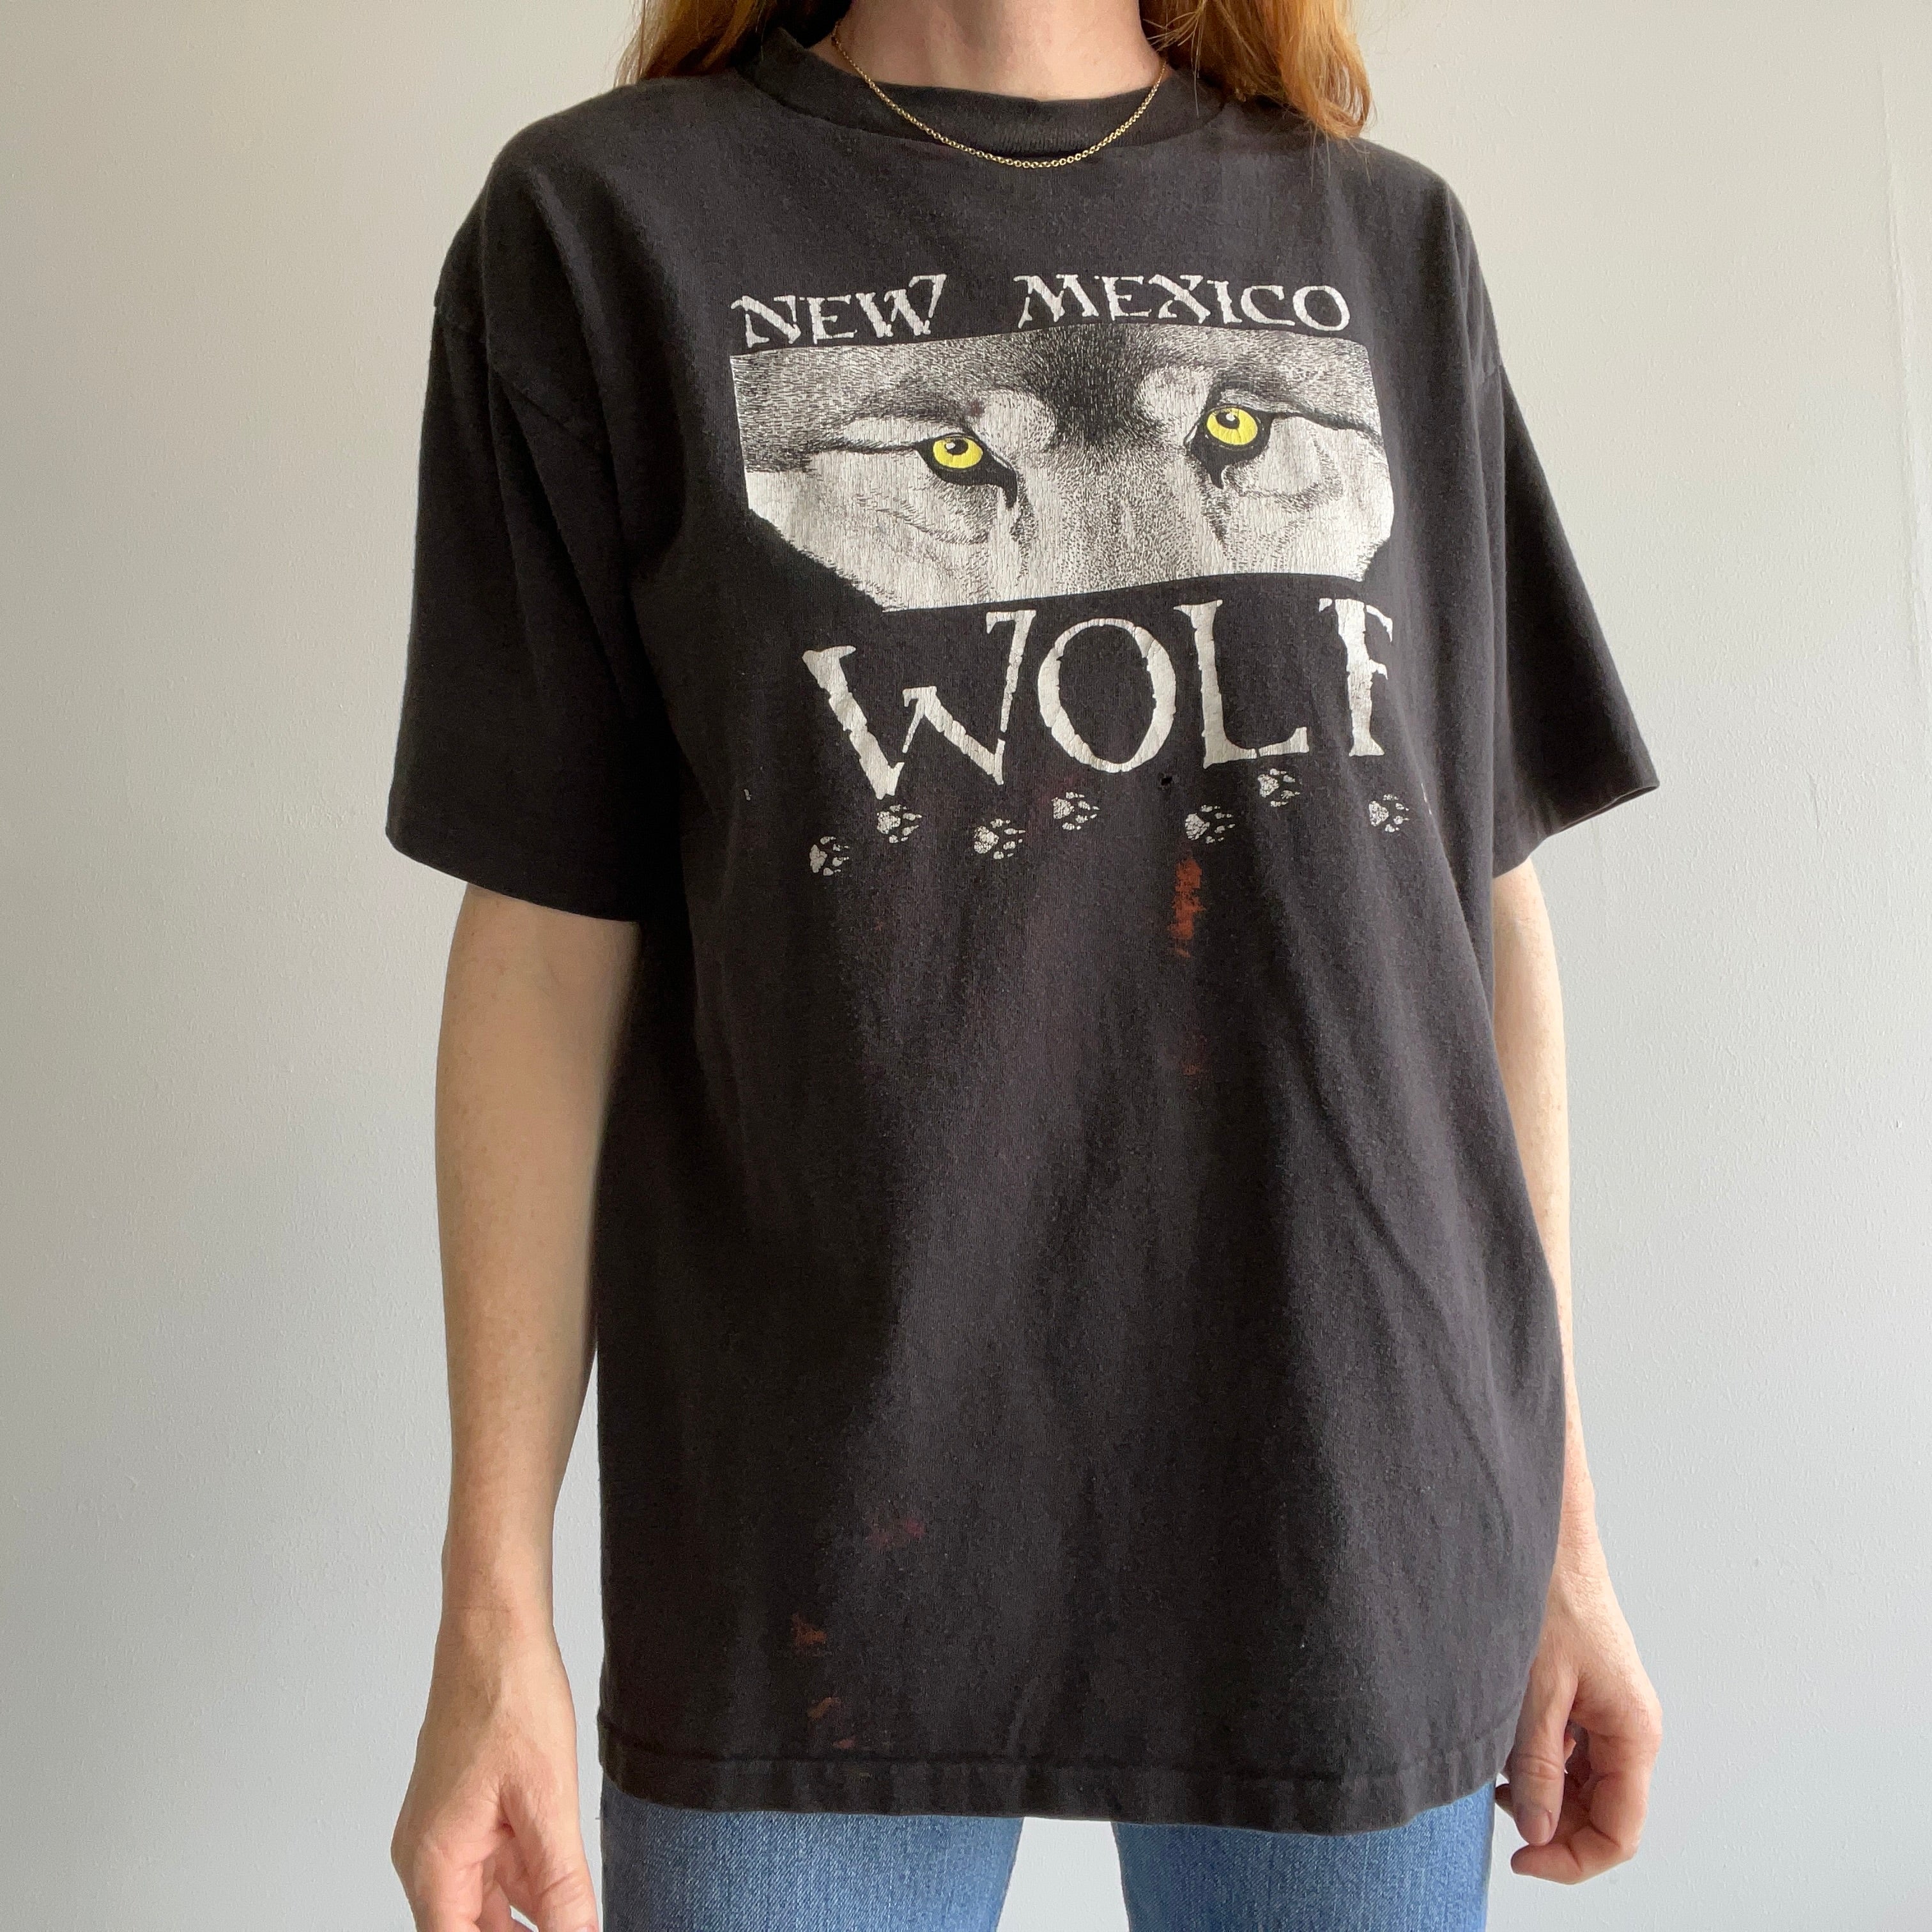 T-shirt loup du Nouveau-Mexique des années 1990 avec des taches de peinture